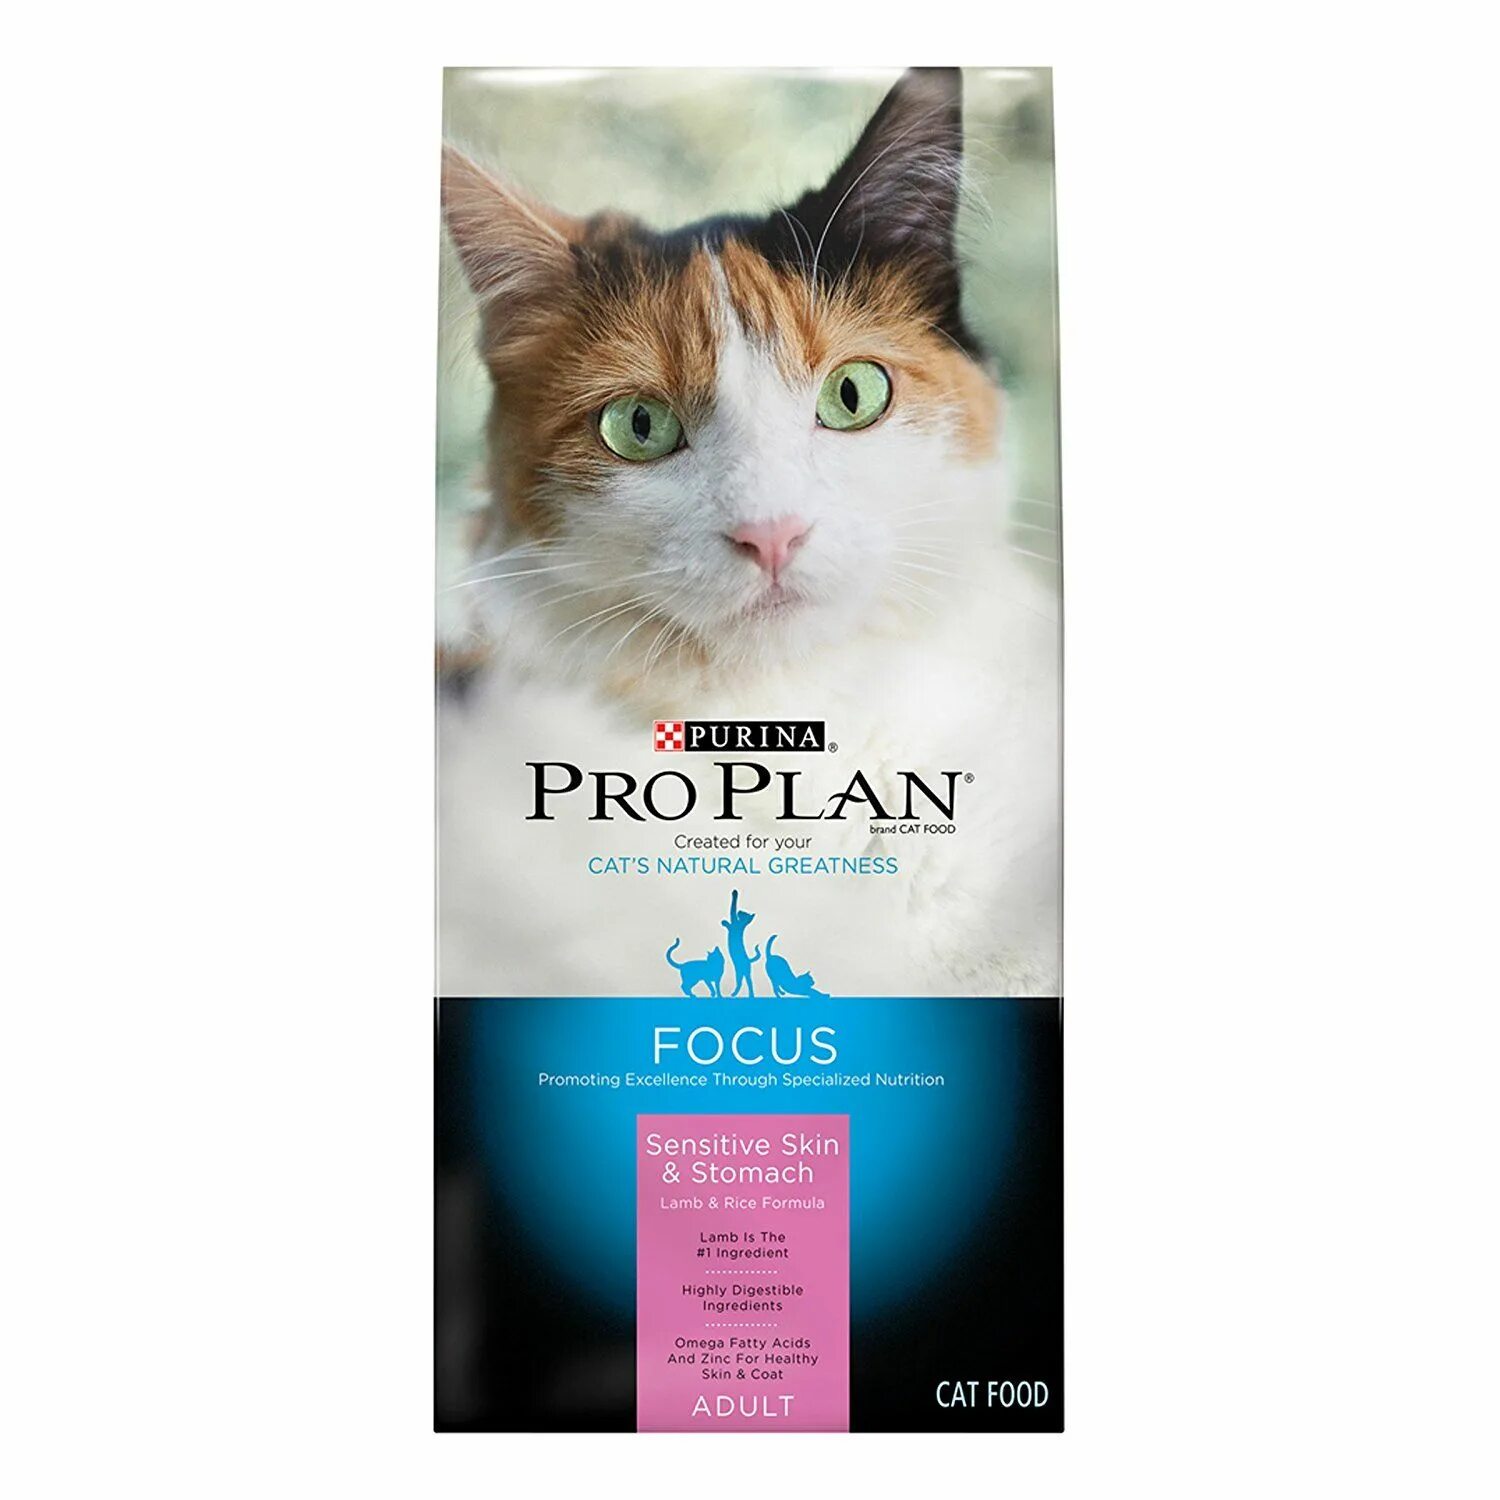 Пурина Сенситив для кошек. Sensitive PROPLAN корм для кошки. Purina Pro Plan sensitive Skin для кошек. Sensitive Lamb корм для кошек.